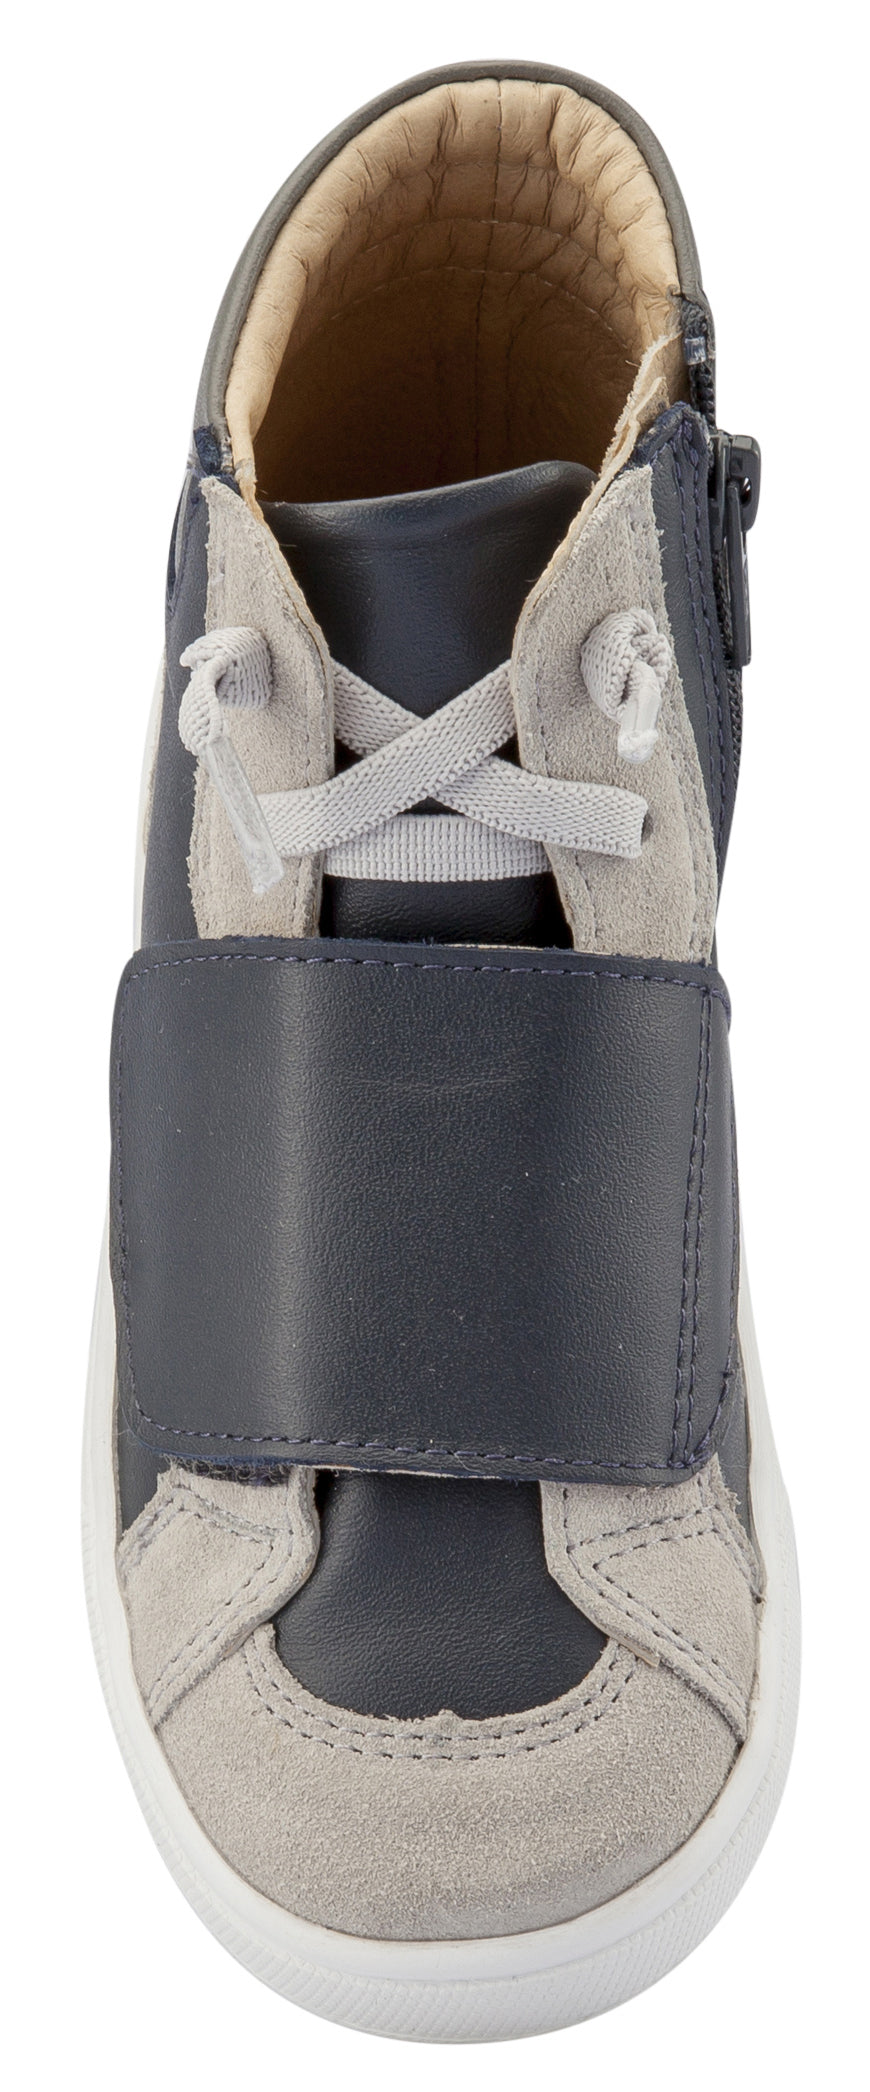 Old Soles Girl's & Boy's OG Sneakers, Navy / Grey Suede / Grey